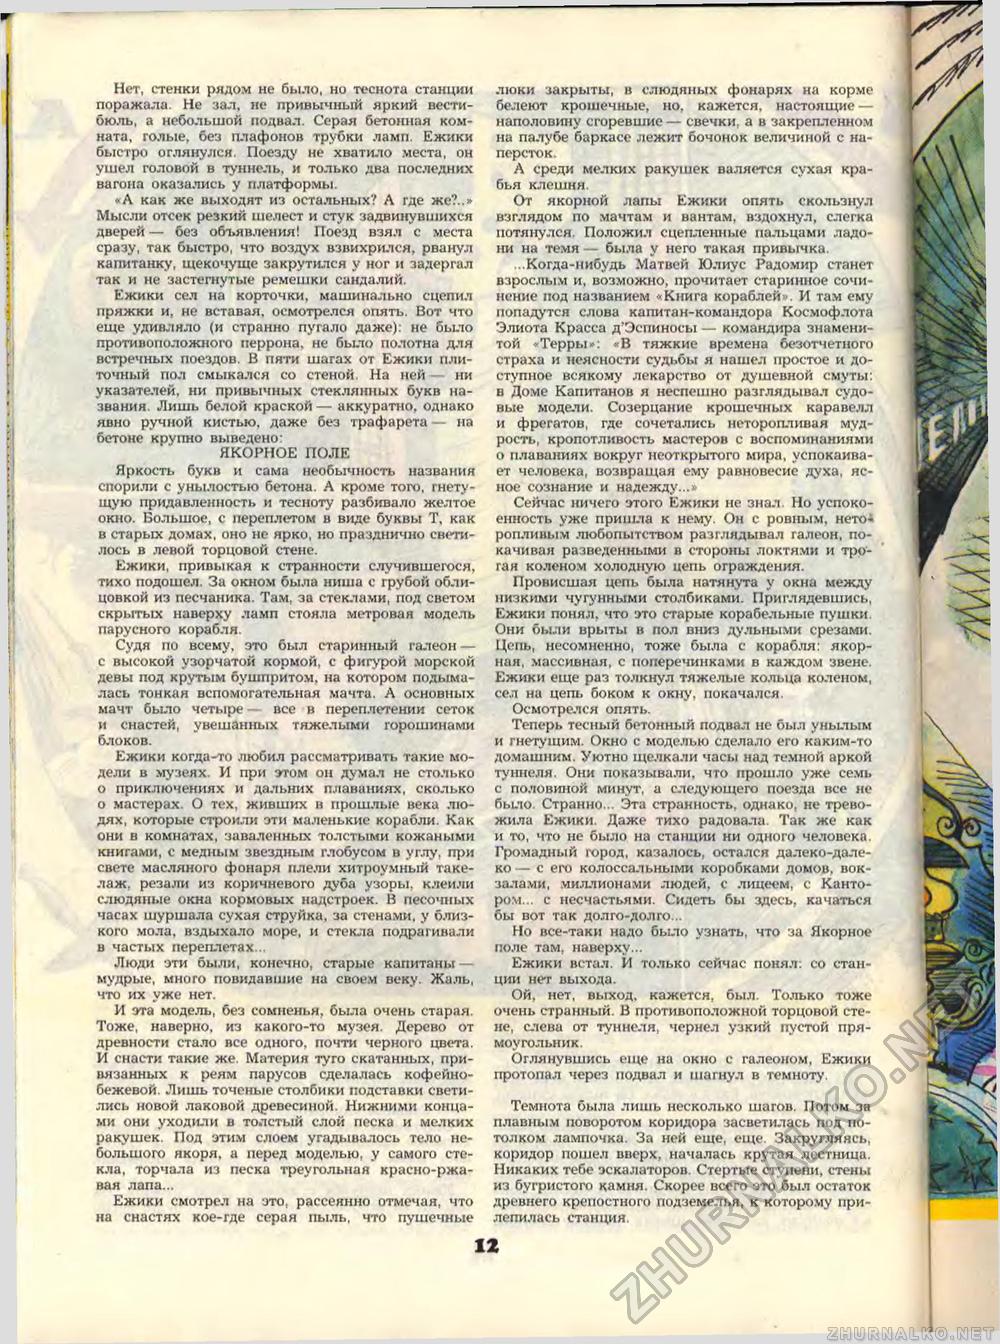 Пионер 1989-10, страница 14